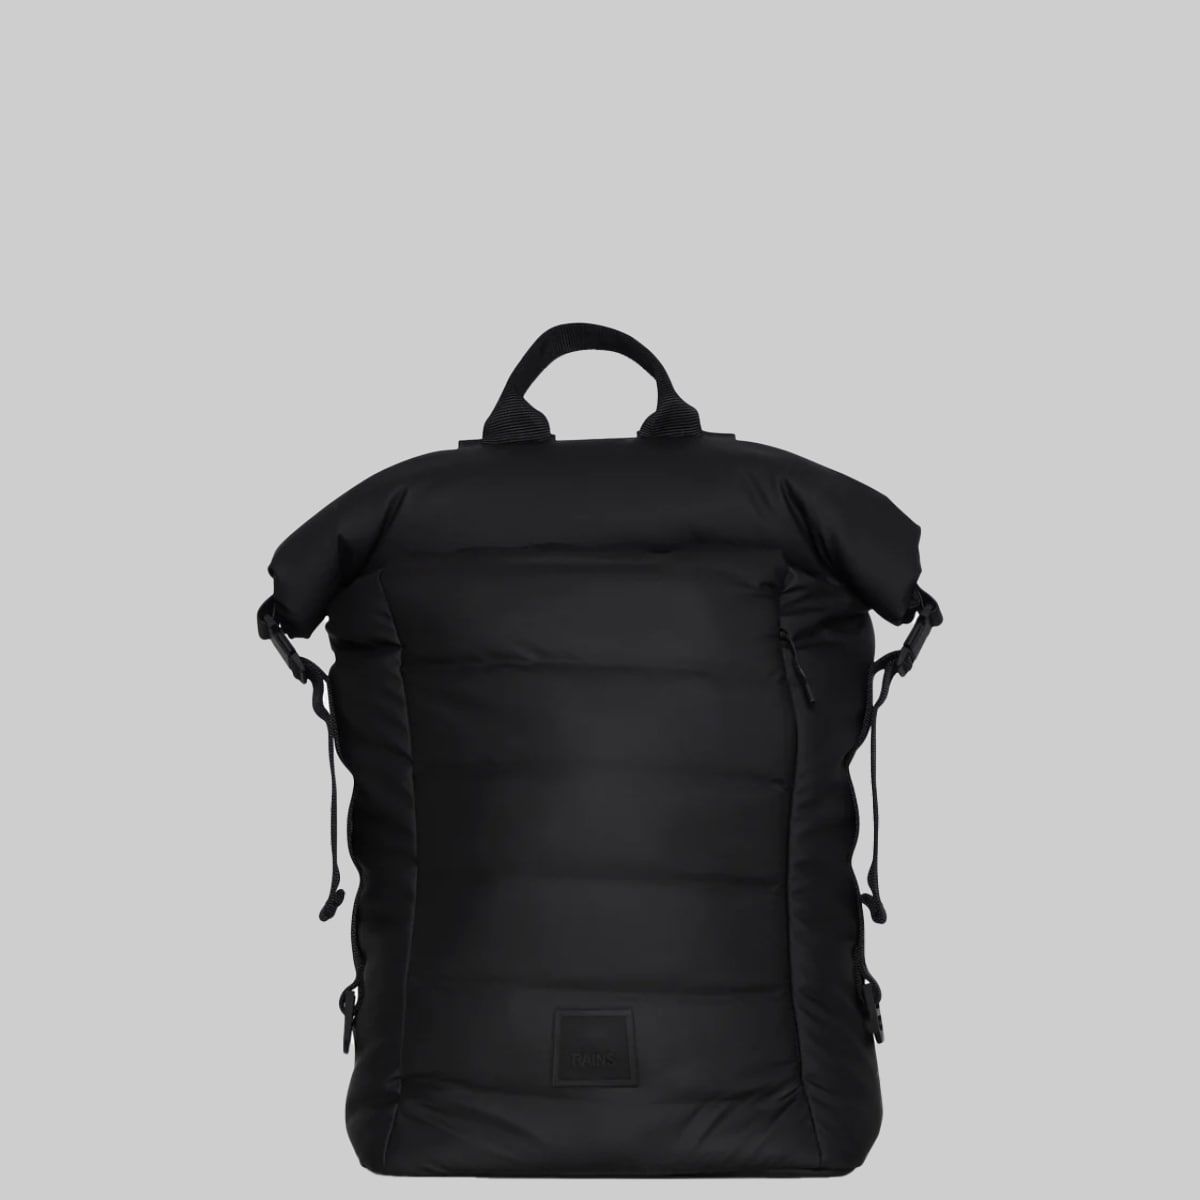 Loop Backpack